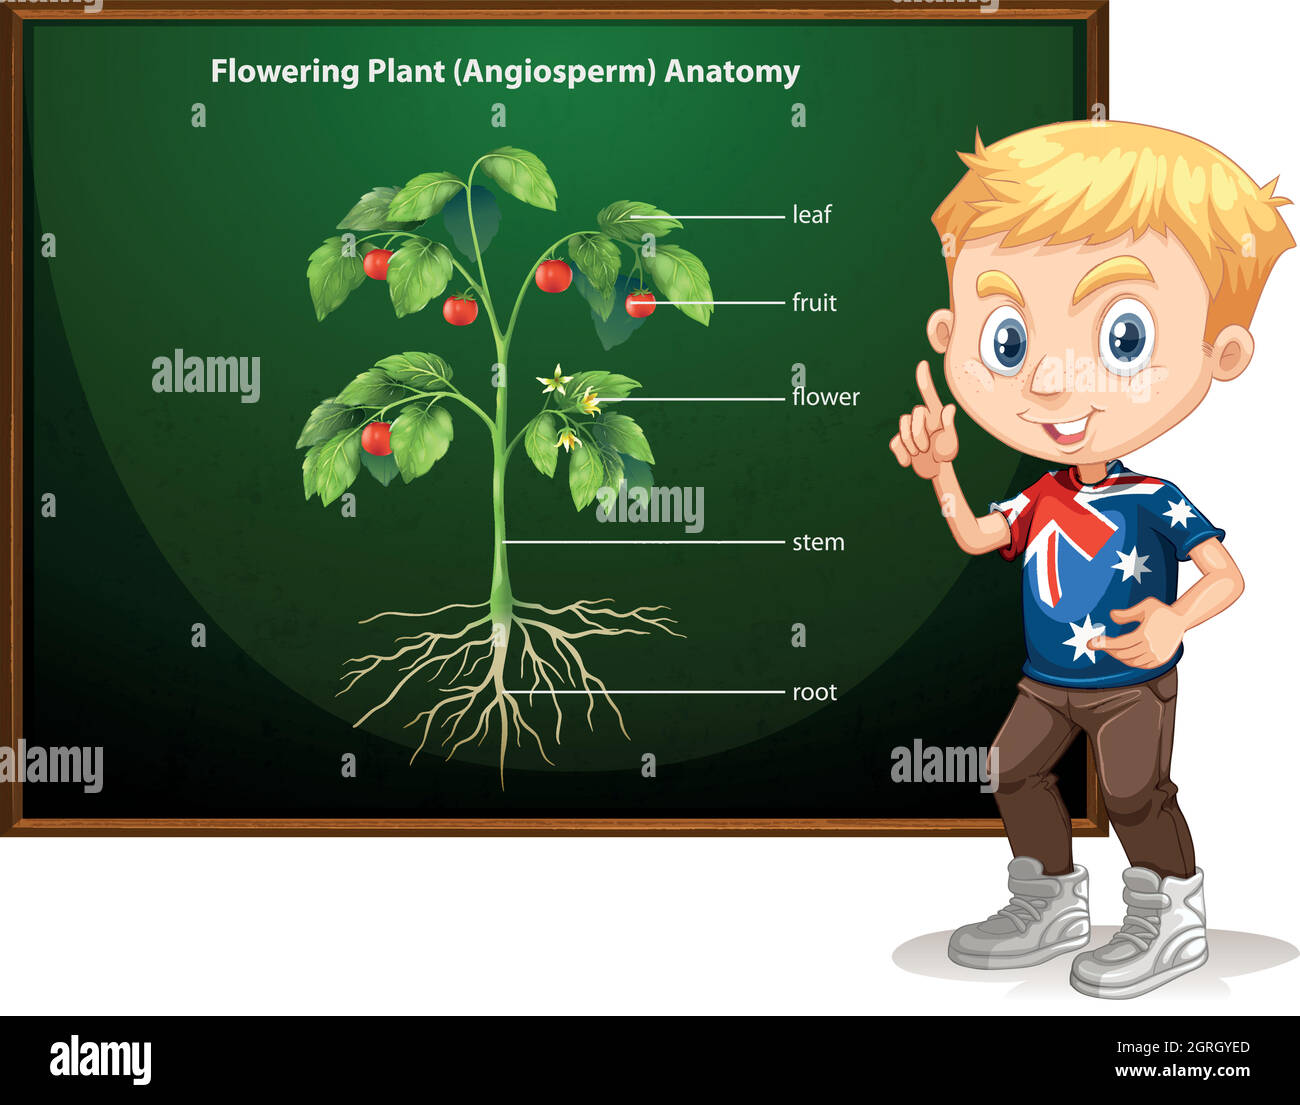 Petit garçon et anatomie florale Illustration de Vecteur